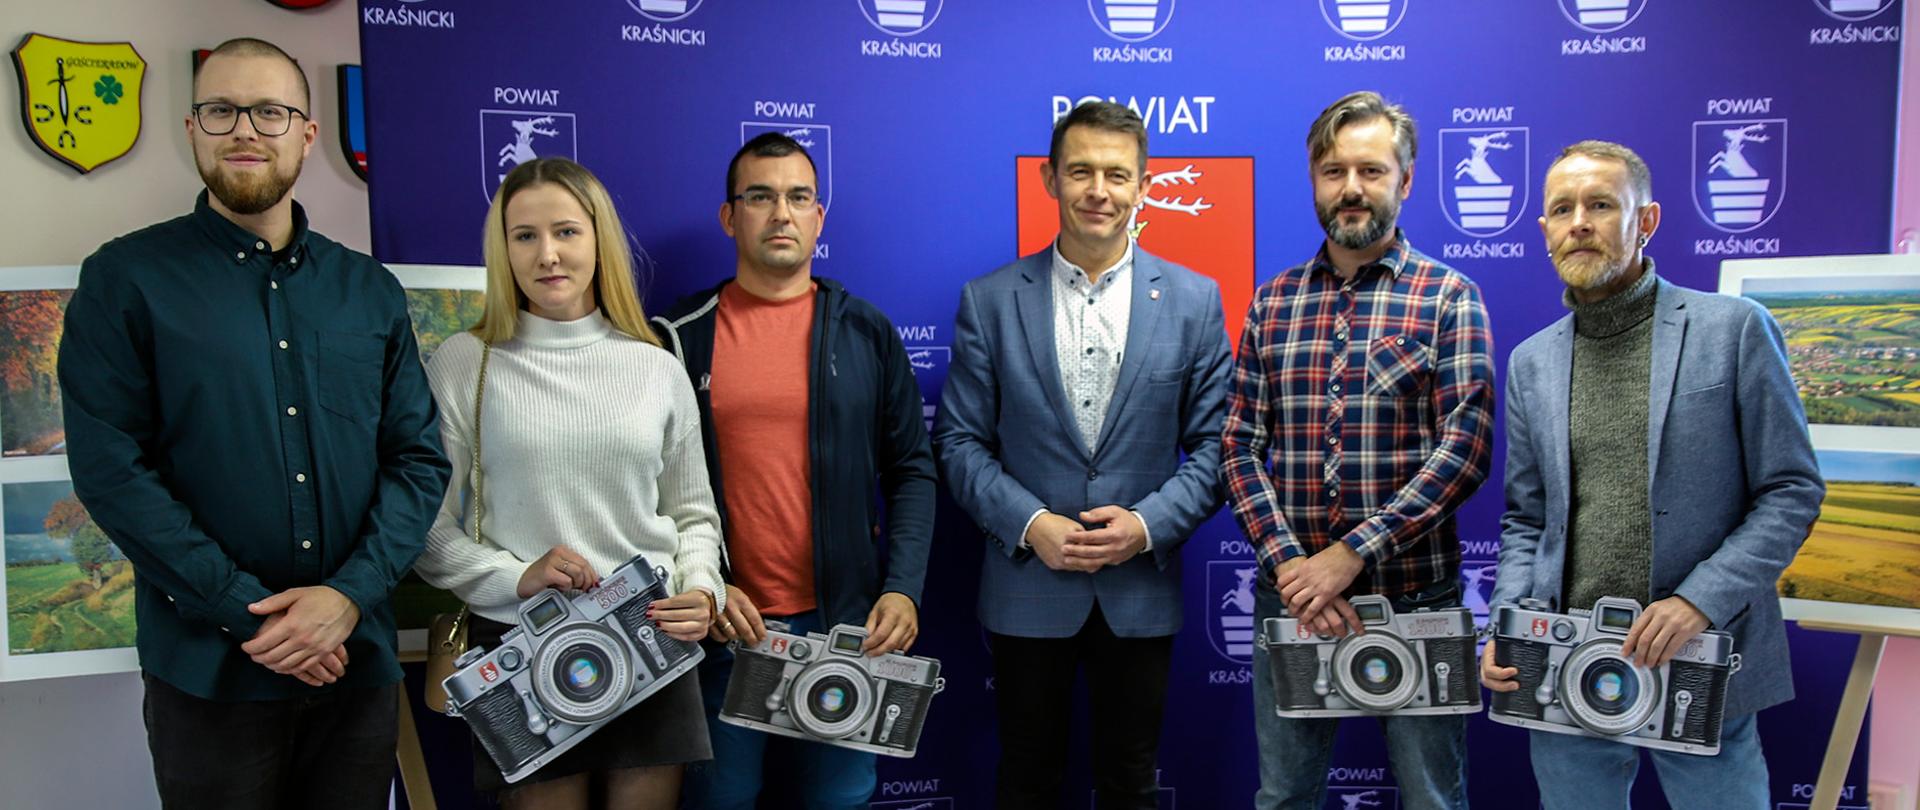 Zdjęcie grupowe laureatów konkursu. Sześć osób na tle niebieskiej ścianki Powiatu Kraśnickiego.